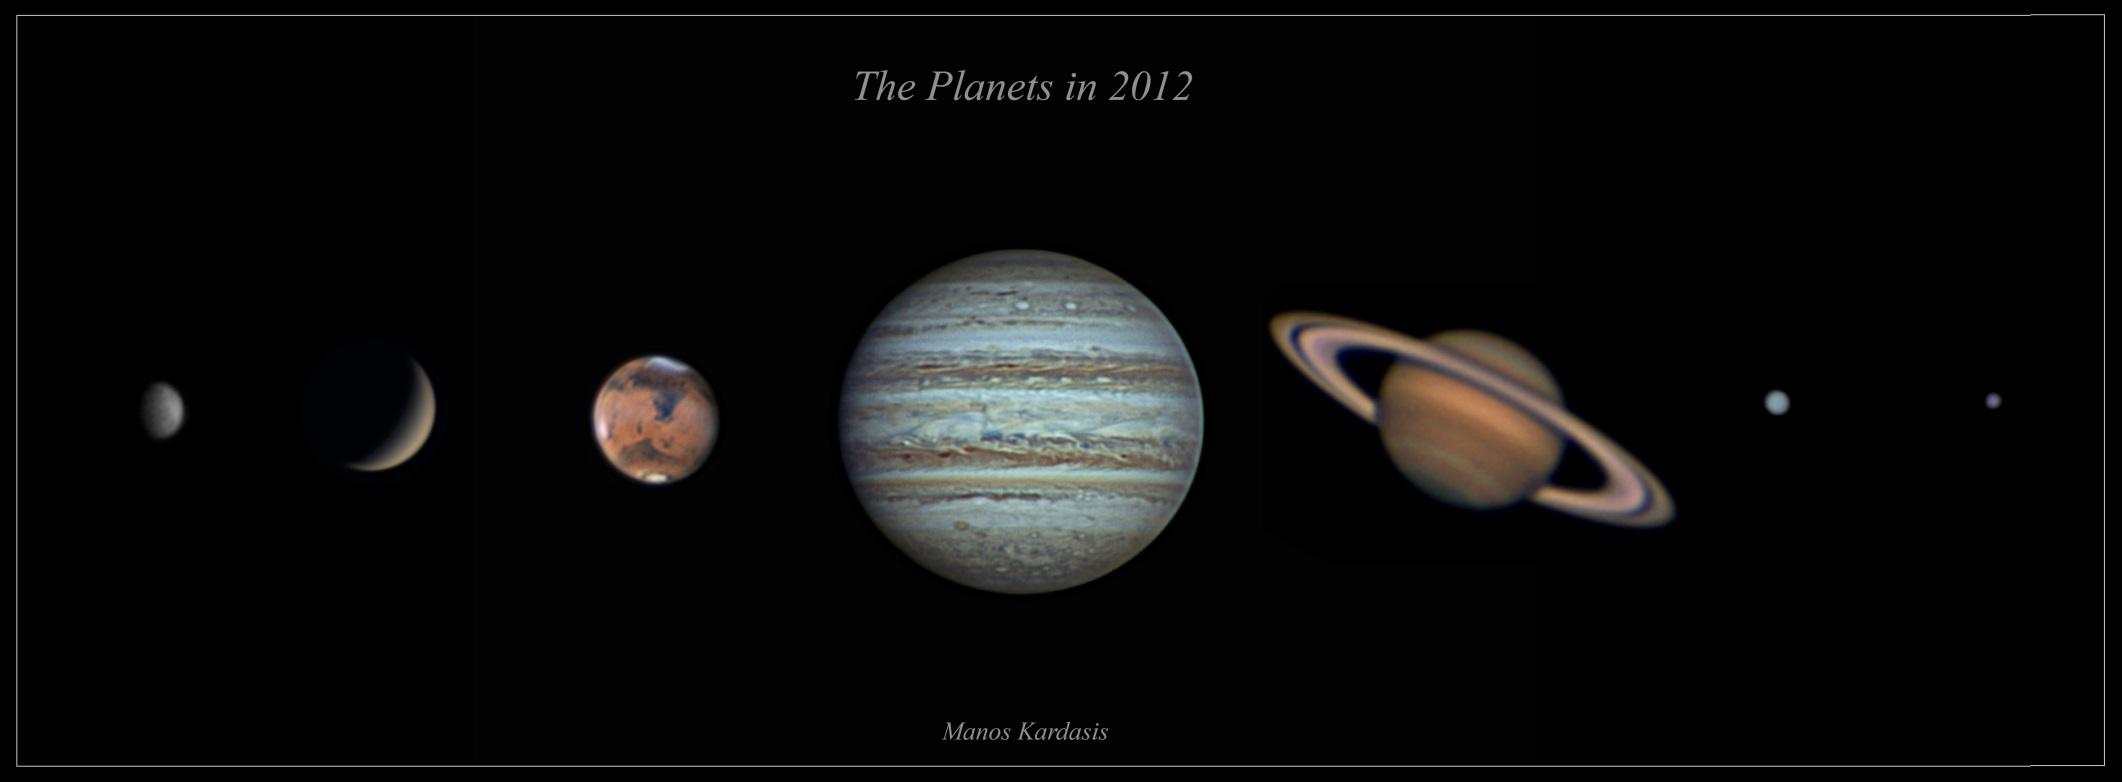 Σύλλογος Ερασιτεχνικής Αστρονομίας Μαθήματα Παρατηρησιακής Αστρονομίας Tομέας Πλανητών, Μάρτιος 2015,